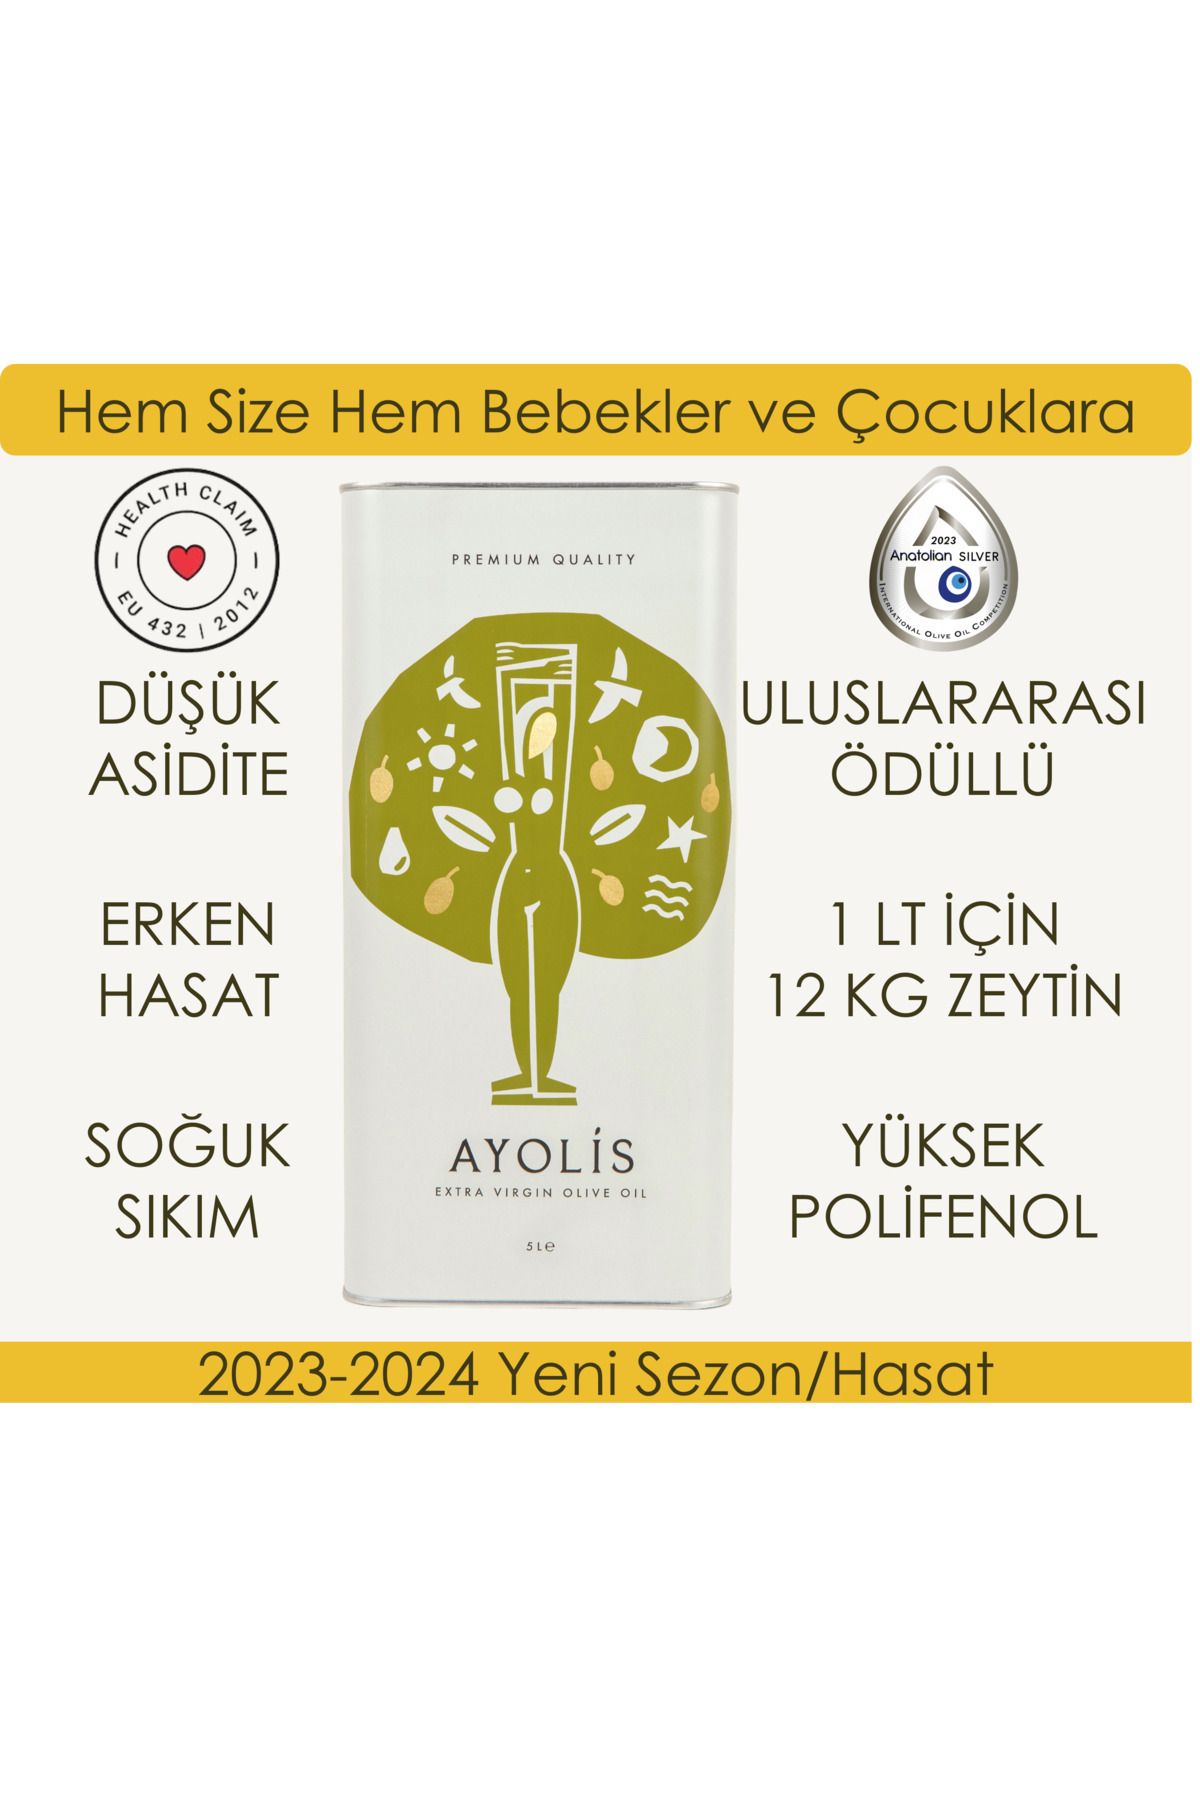 Ayolis Premium Ayvalık 5 Lt Ödüllü Erken Hasat Soğuk Sıkım Natürel Sızma Zeytinyağı 2023-2024